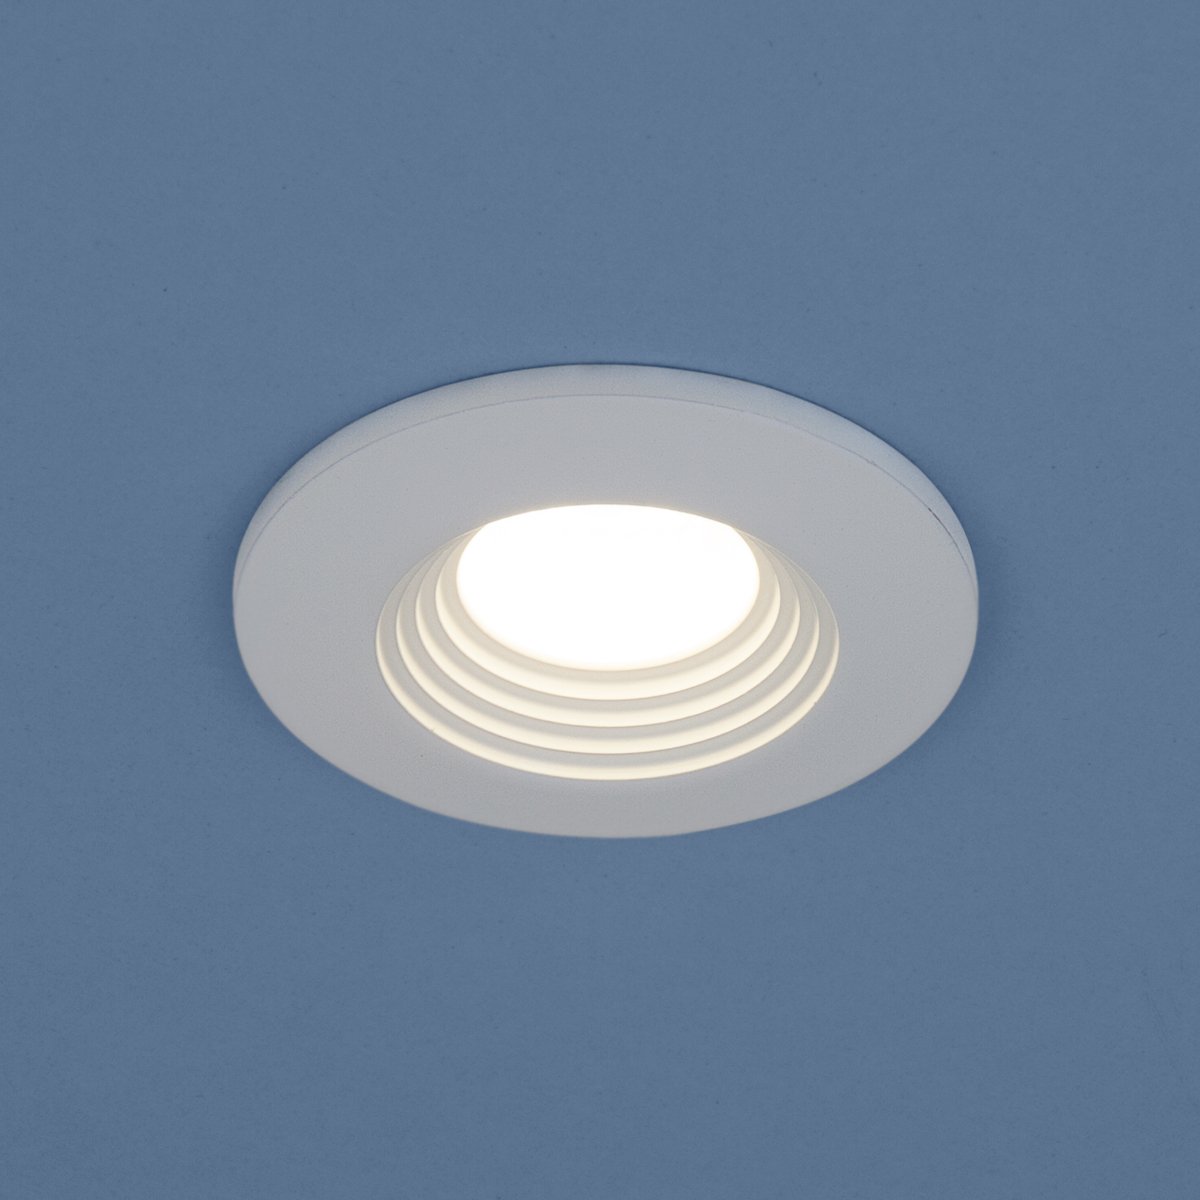 Встраиваемый светодиодный светильник Elektrostandard 9903 LED 3W COB WH белый 4690389107658